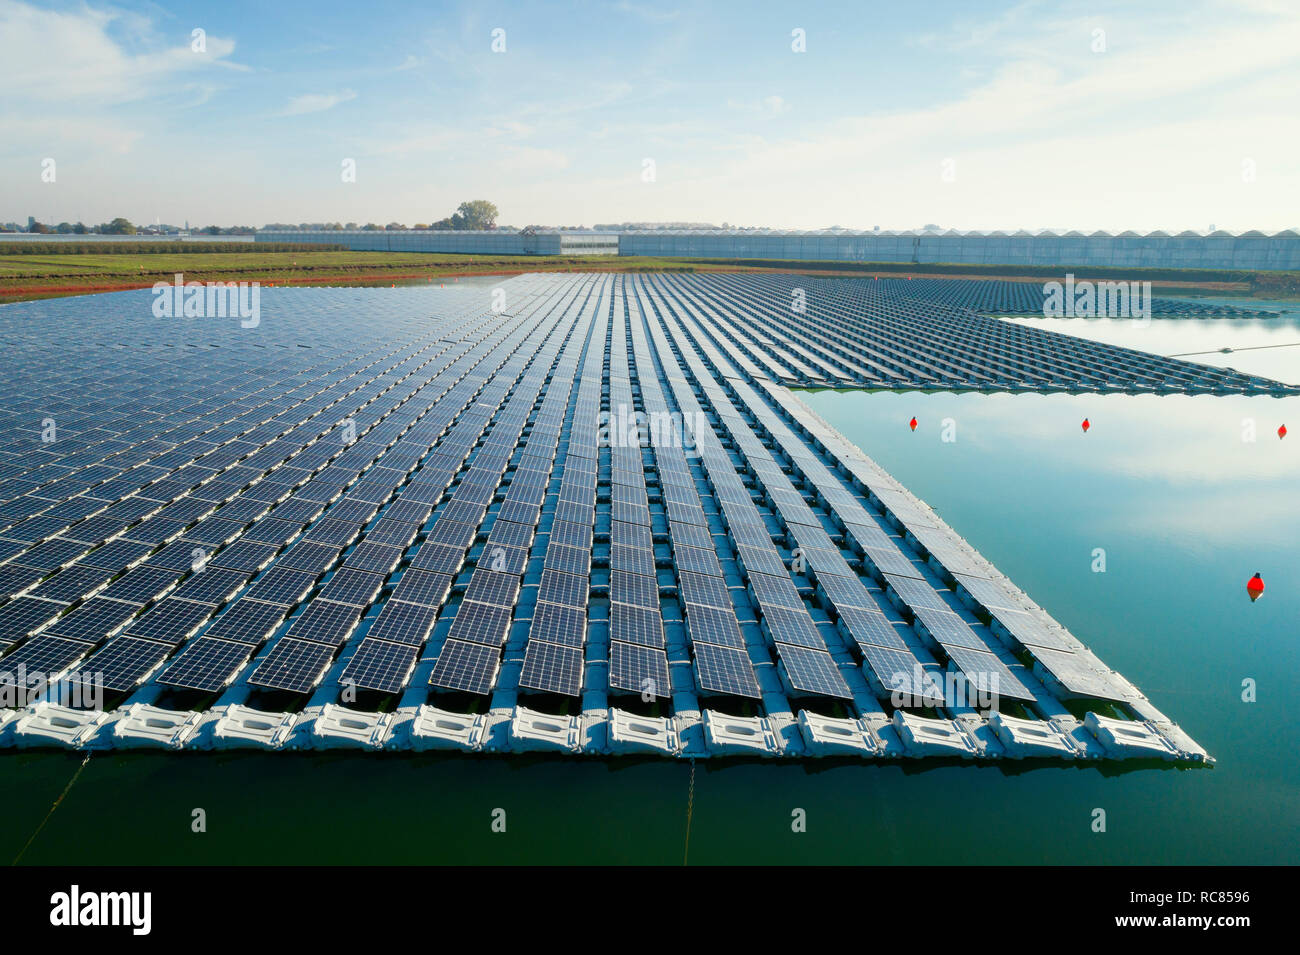 Paneles solares flotantes instalados en el abastecimiento de agua de los vecinos de los invernaderos, vista elevada, Países Bajos Foto de stock